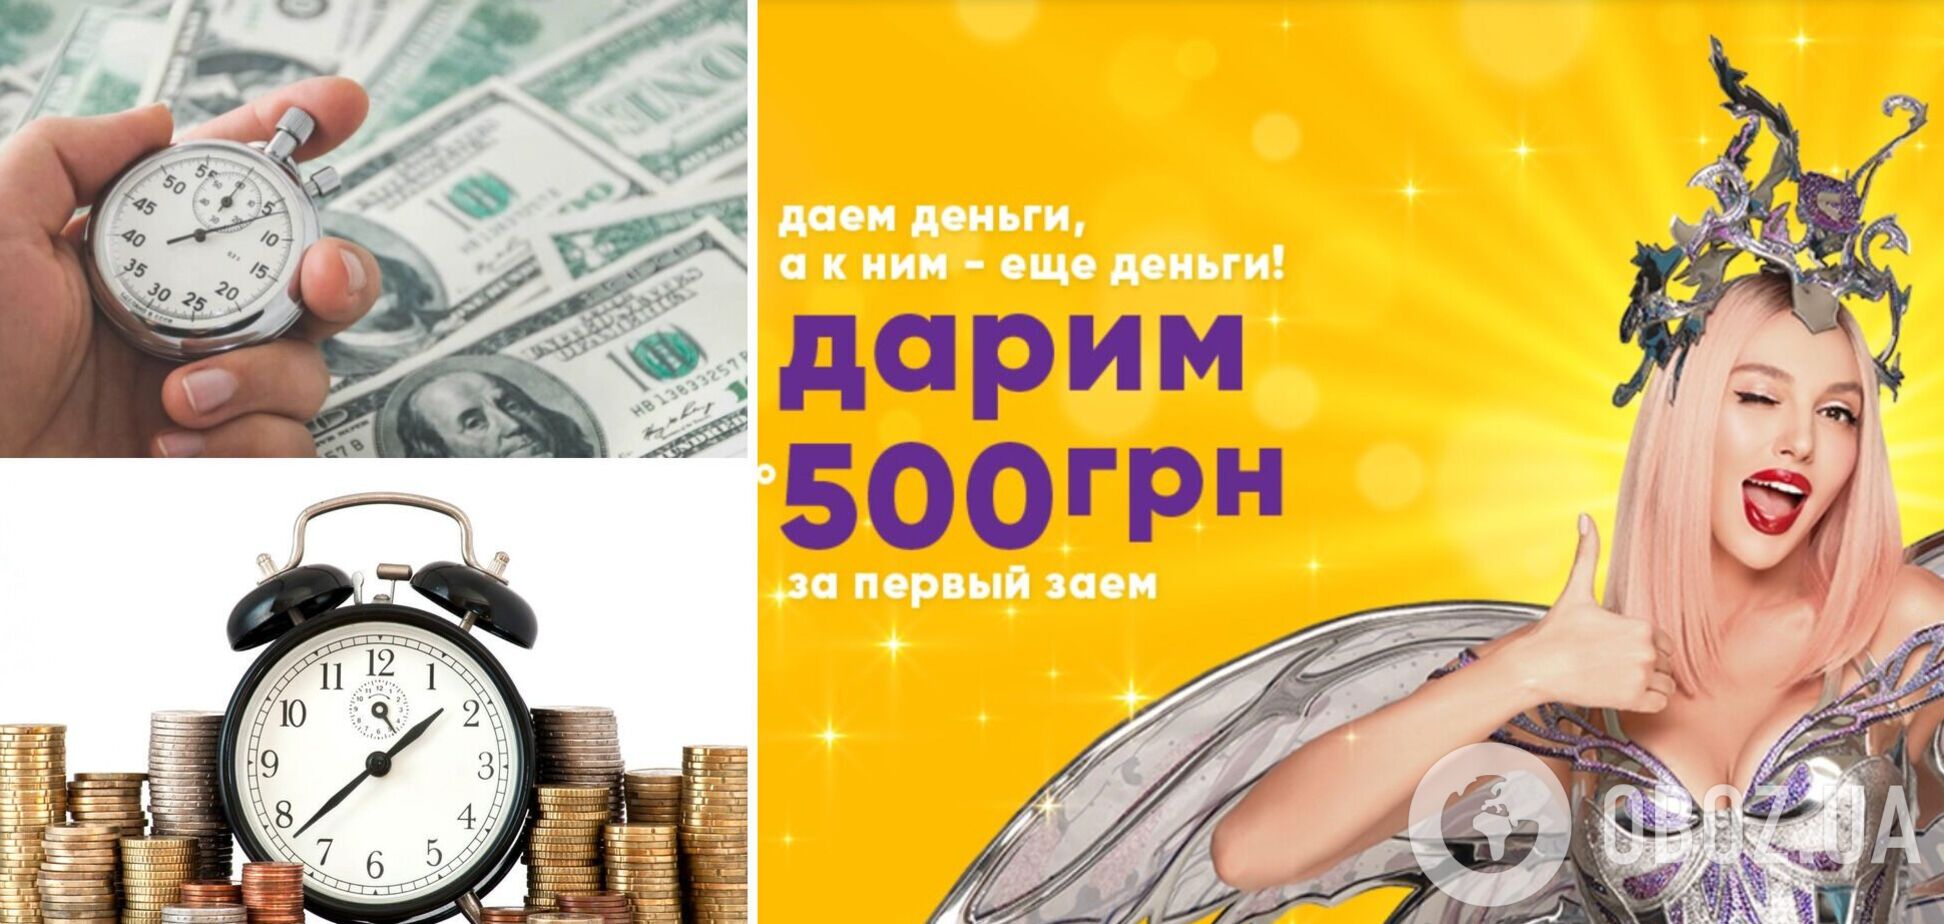 Українцям дають кредити під величезні відсотки річних